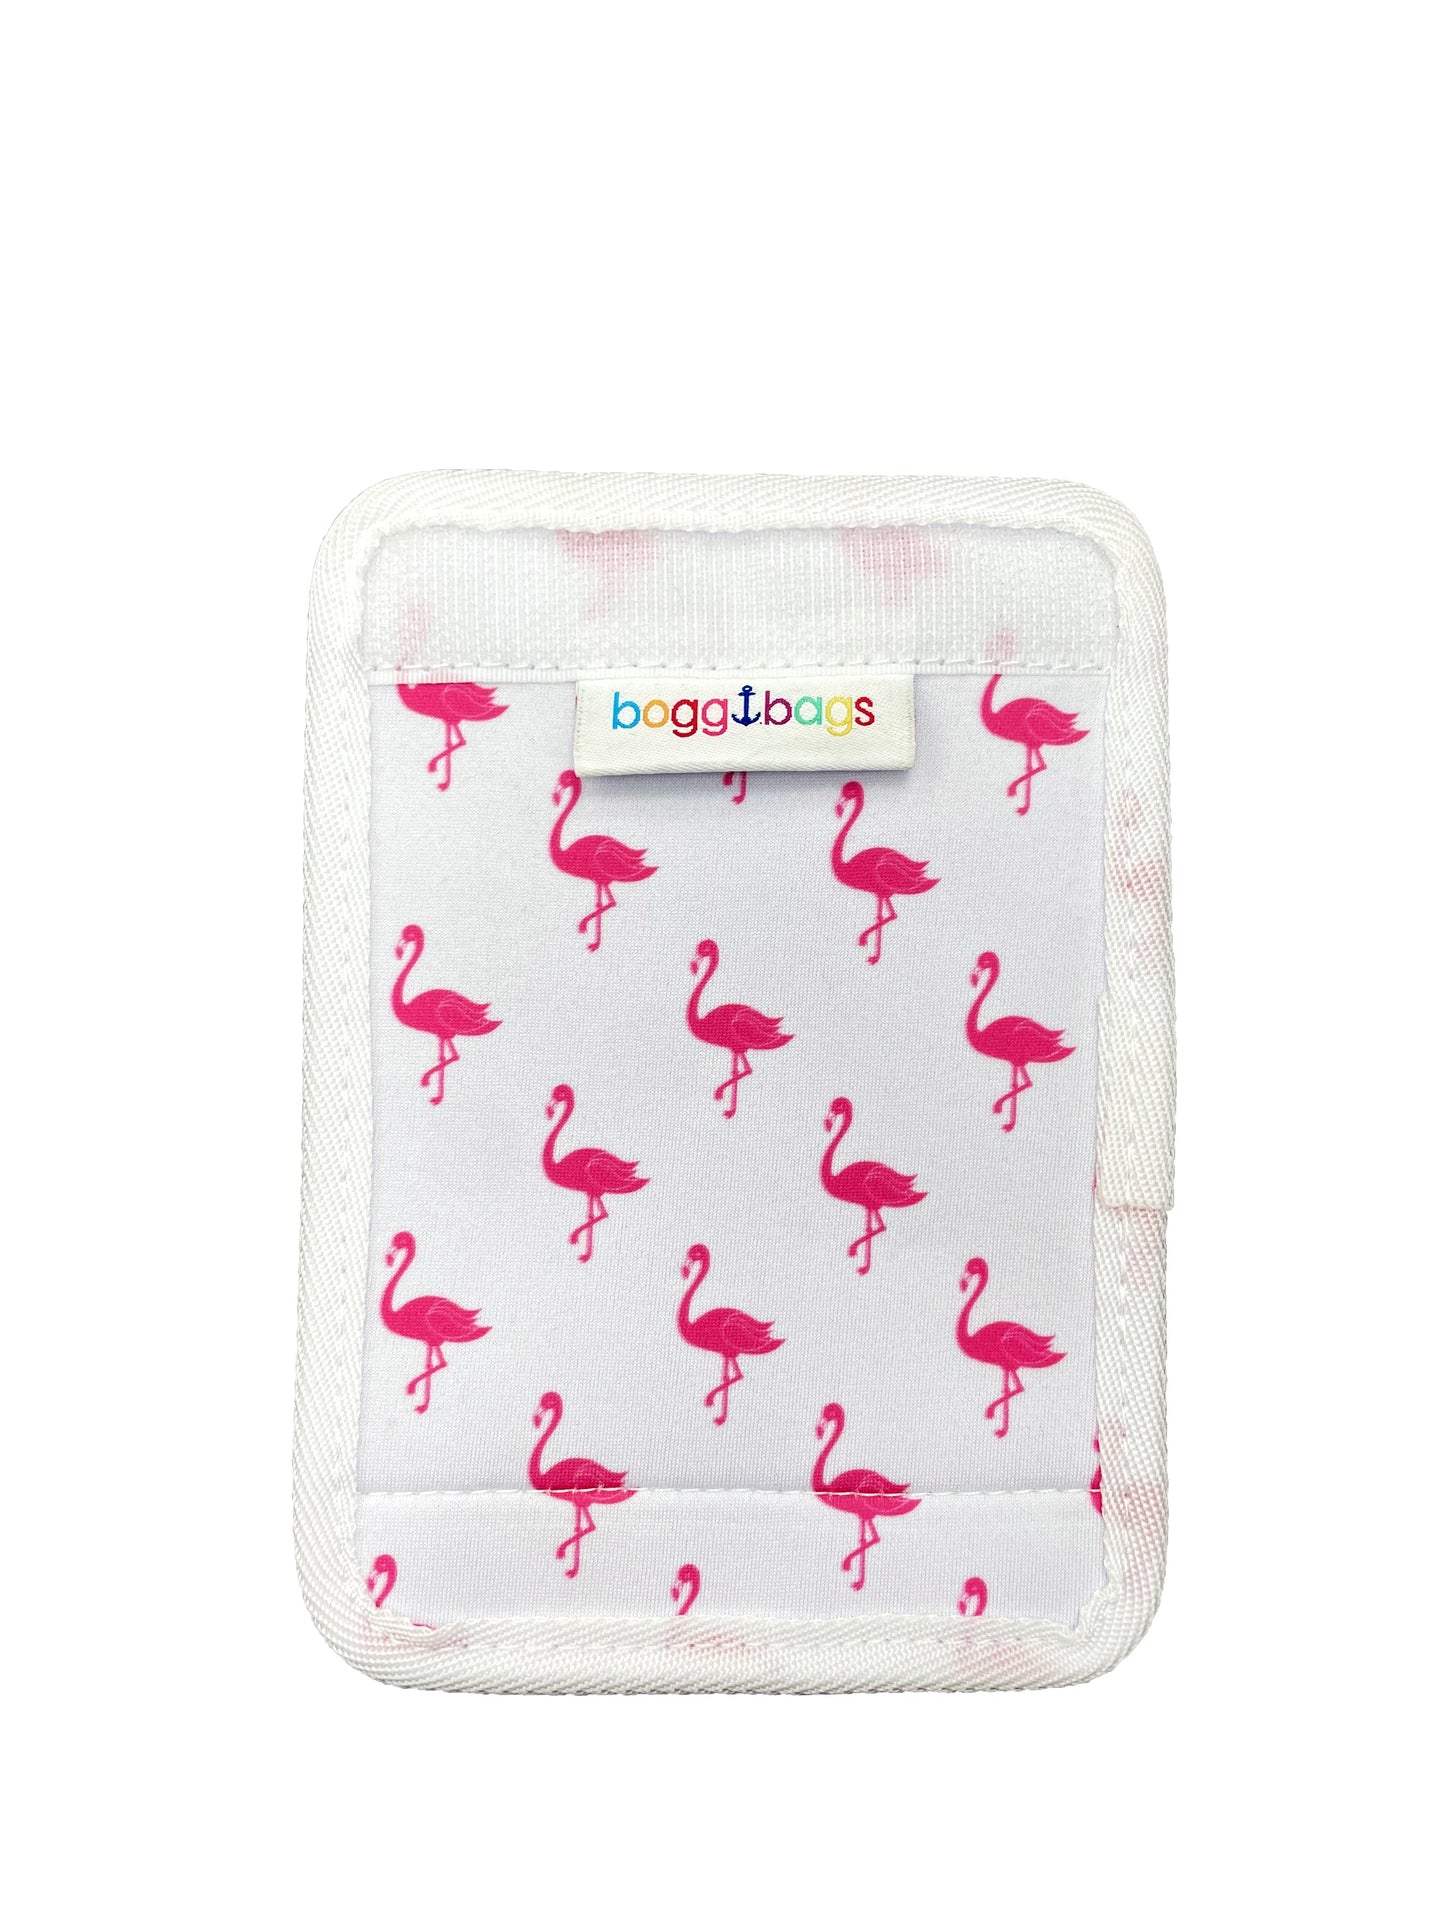 Bogg® Bag Strap Wrap - Flamingo